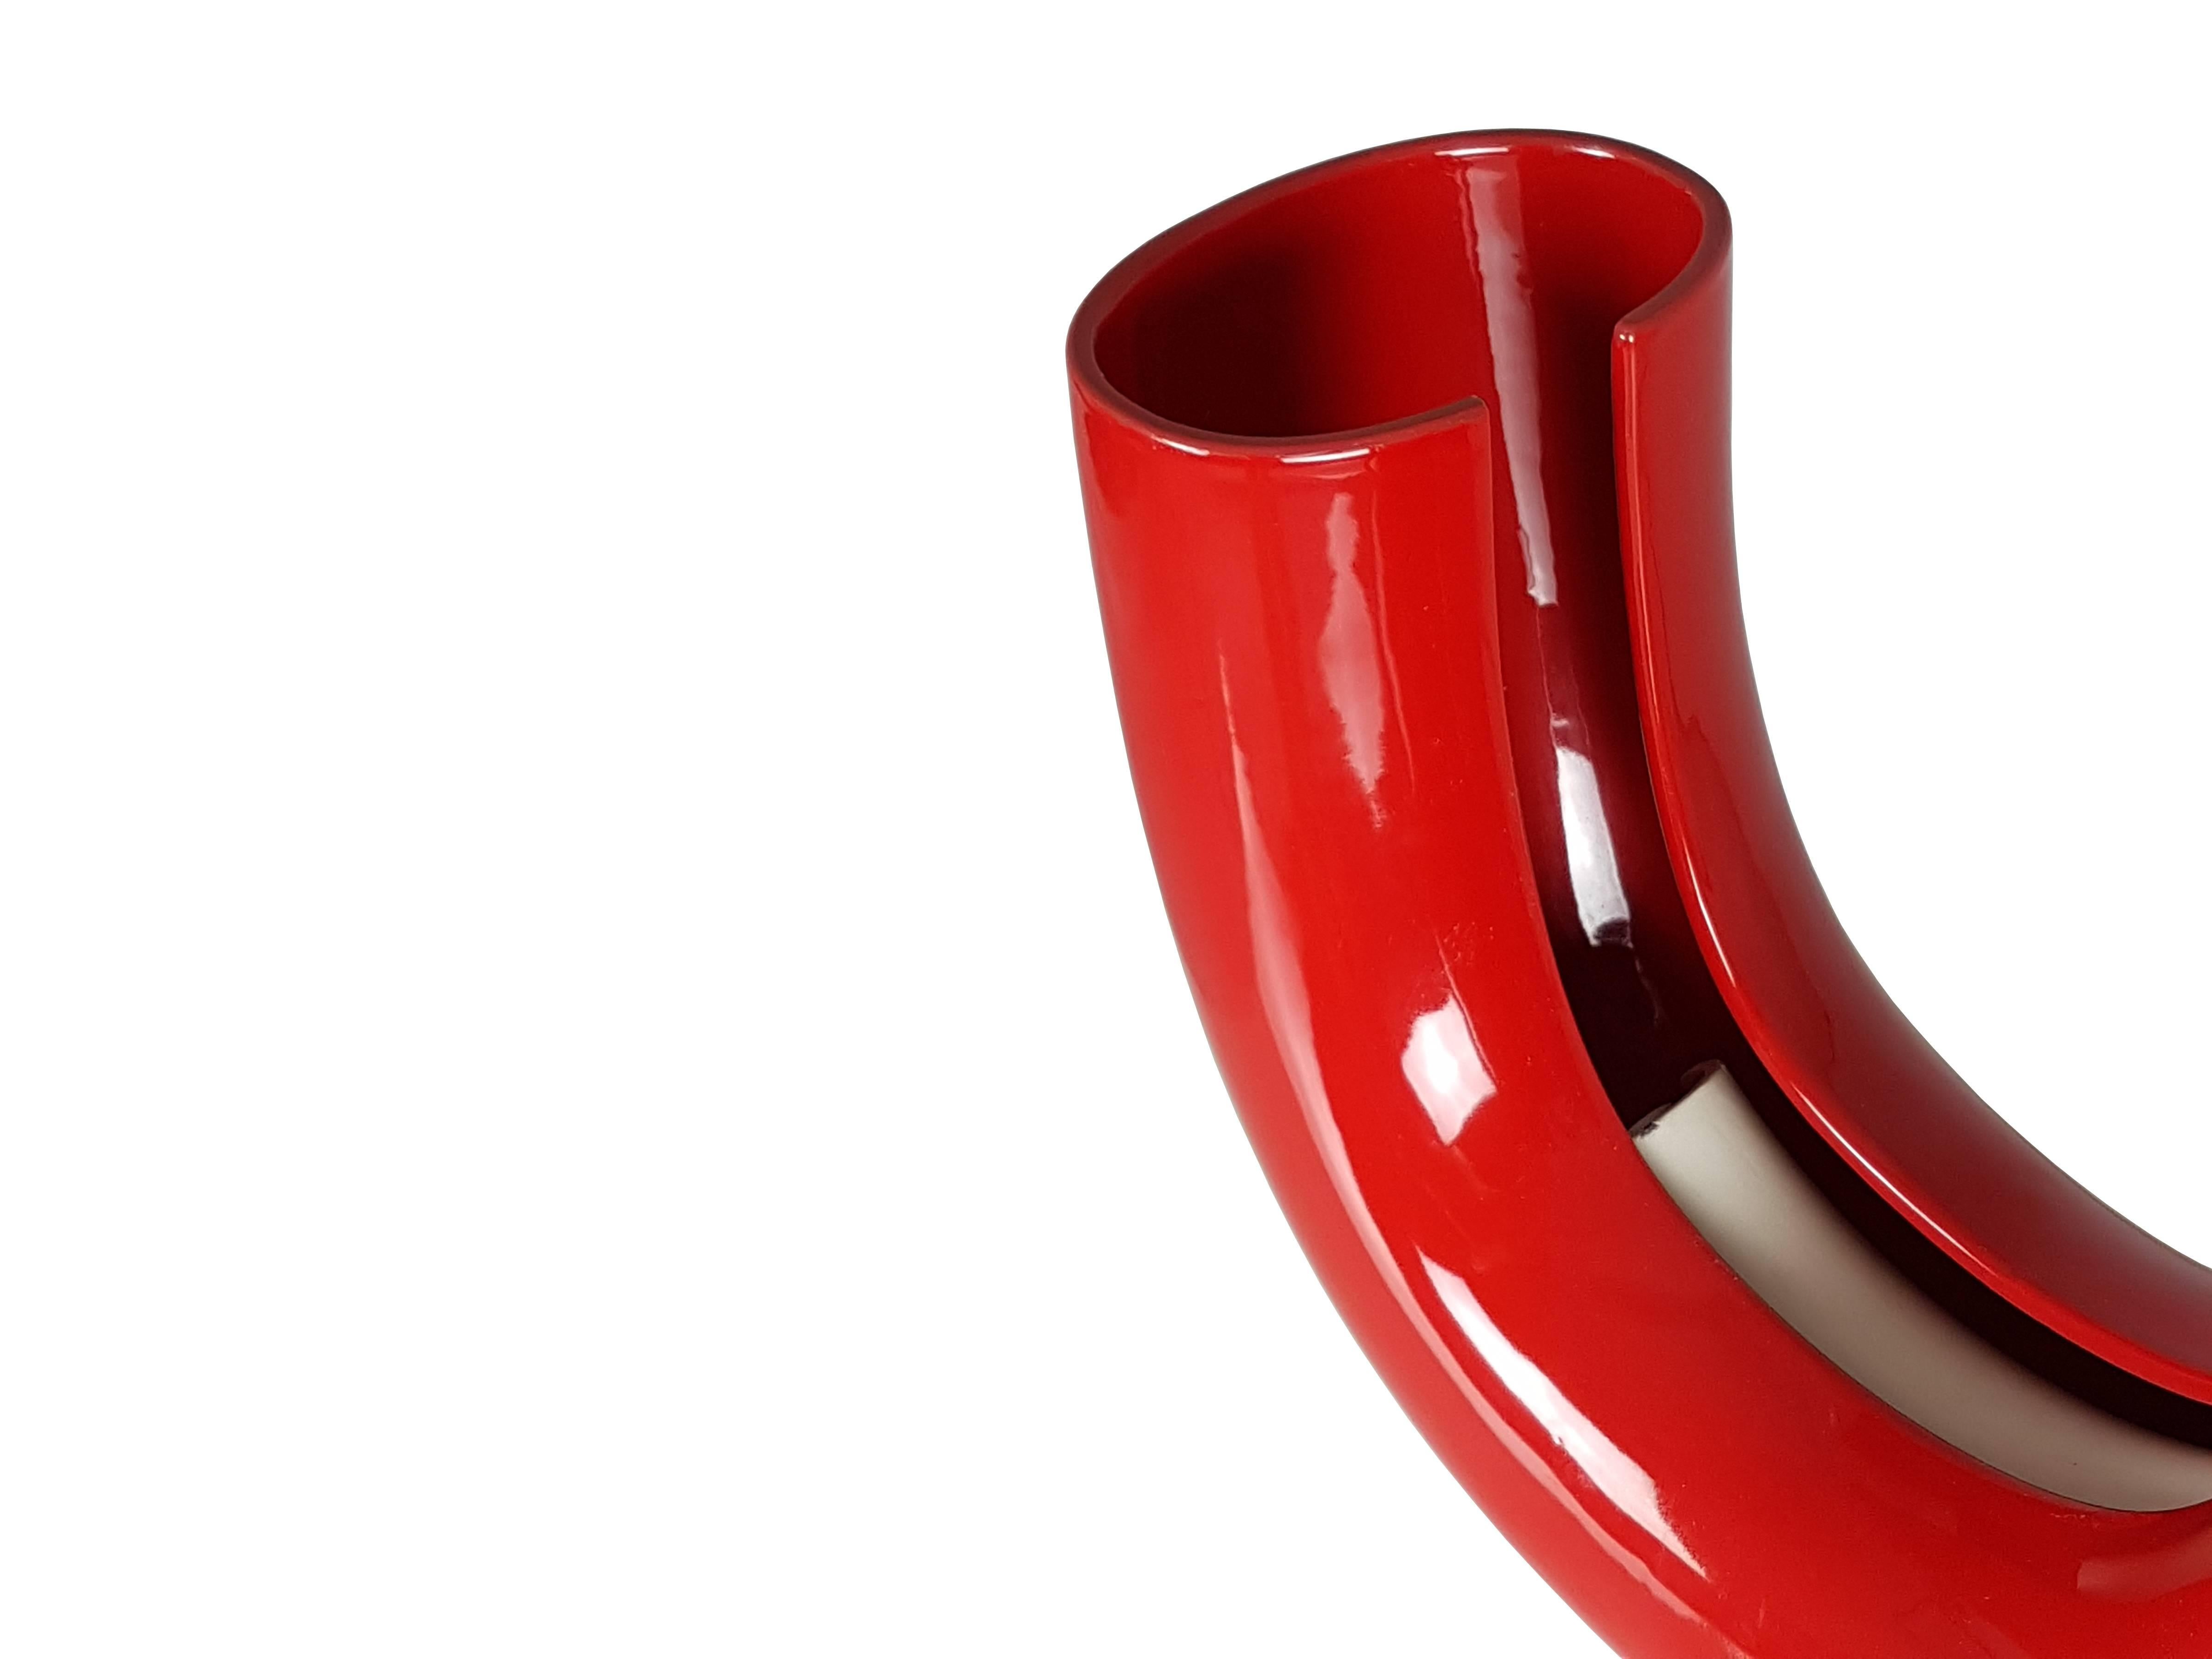 Rare lampe de table tubo conçue par Tomoko Tsuboi Ponzio et produite par Ceramica Franco Pozzi de Gallarate (Milan). Céramique émaillée rouge avec deux porte-lampes internes.